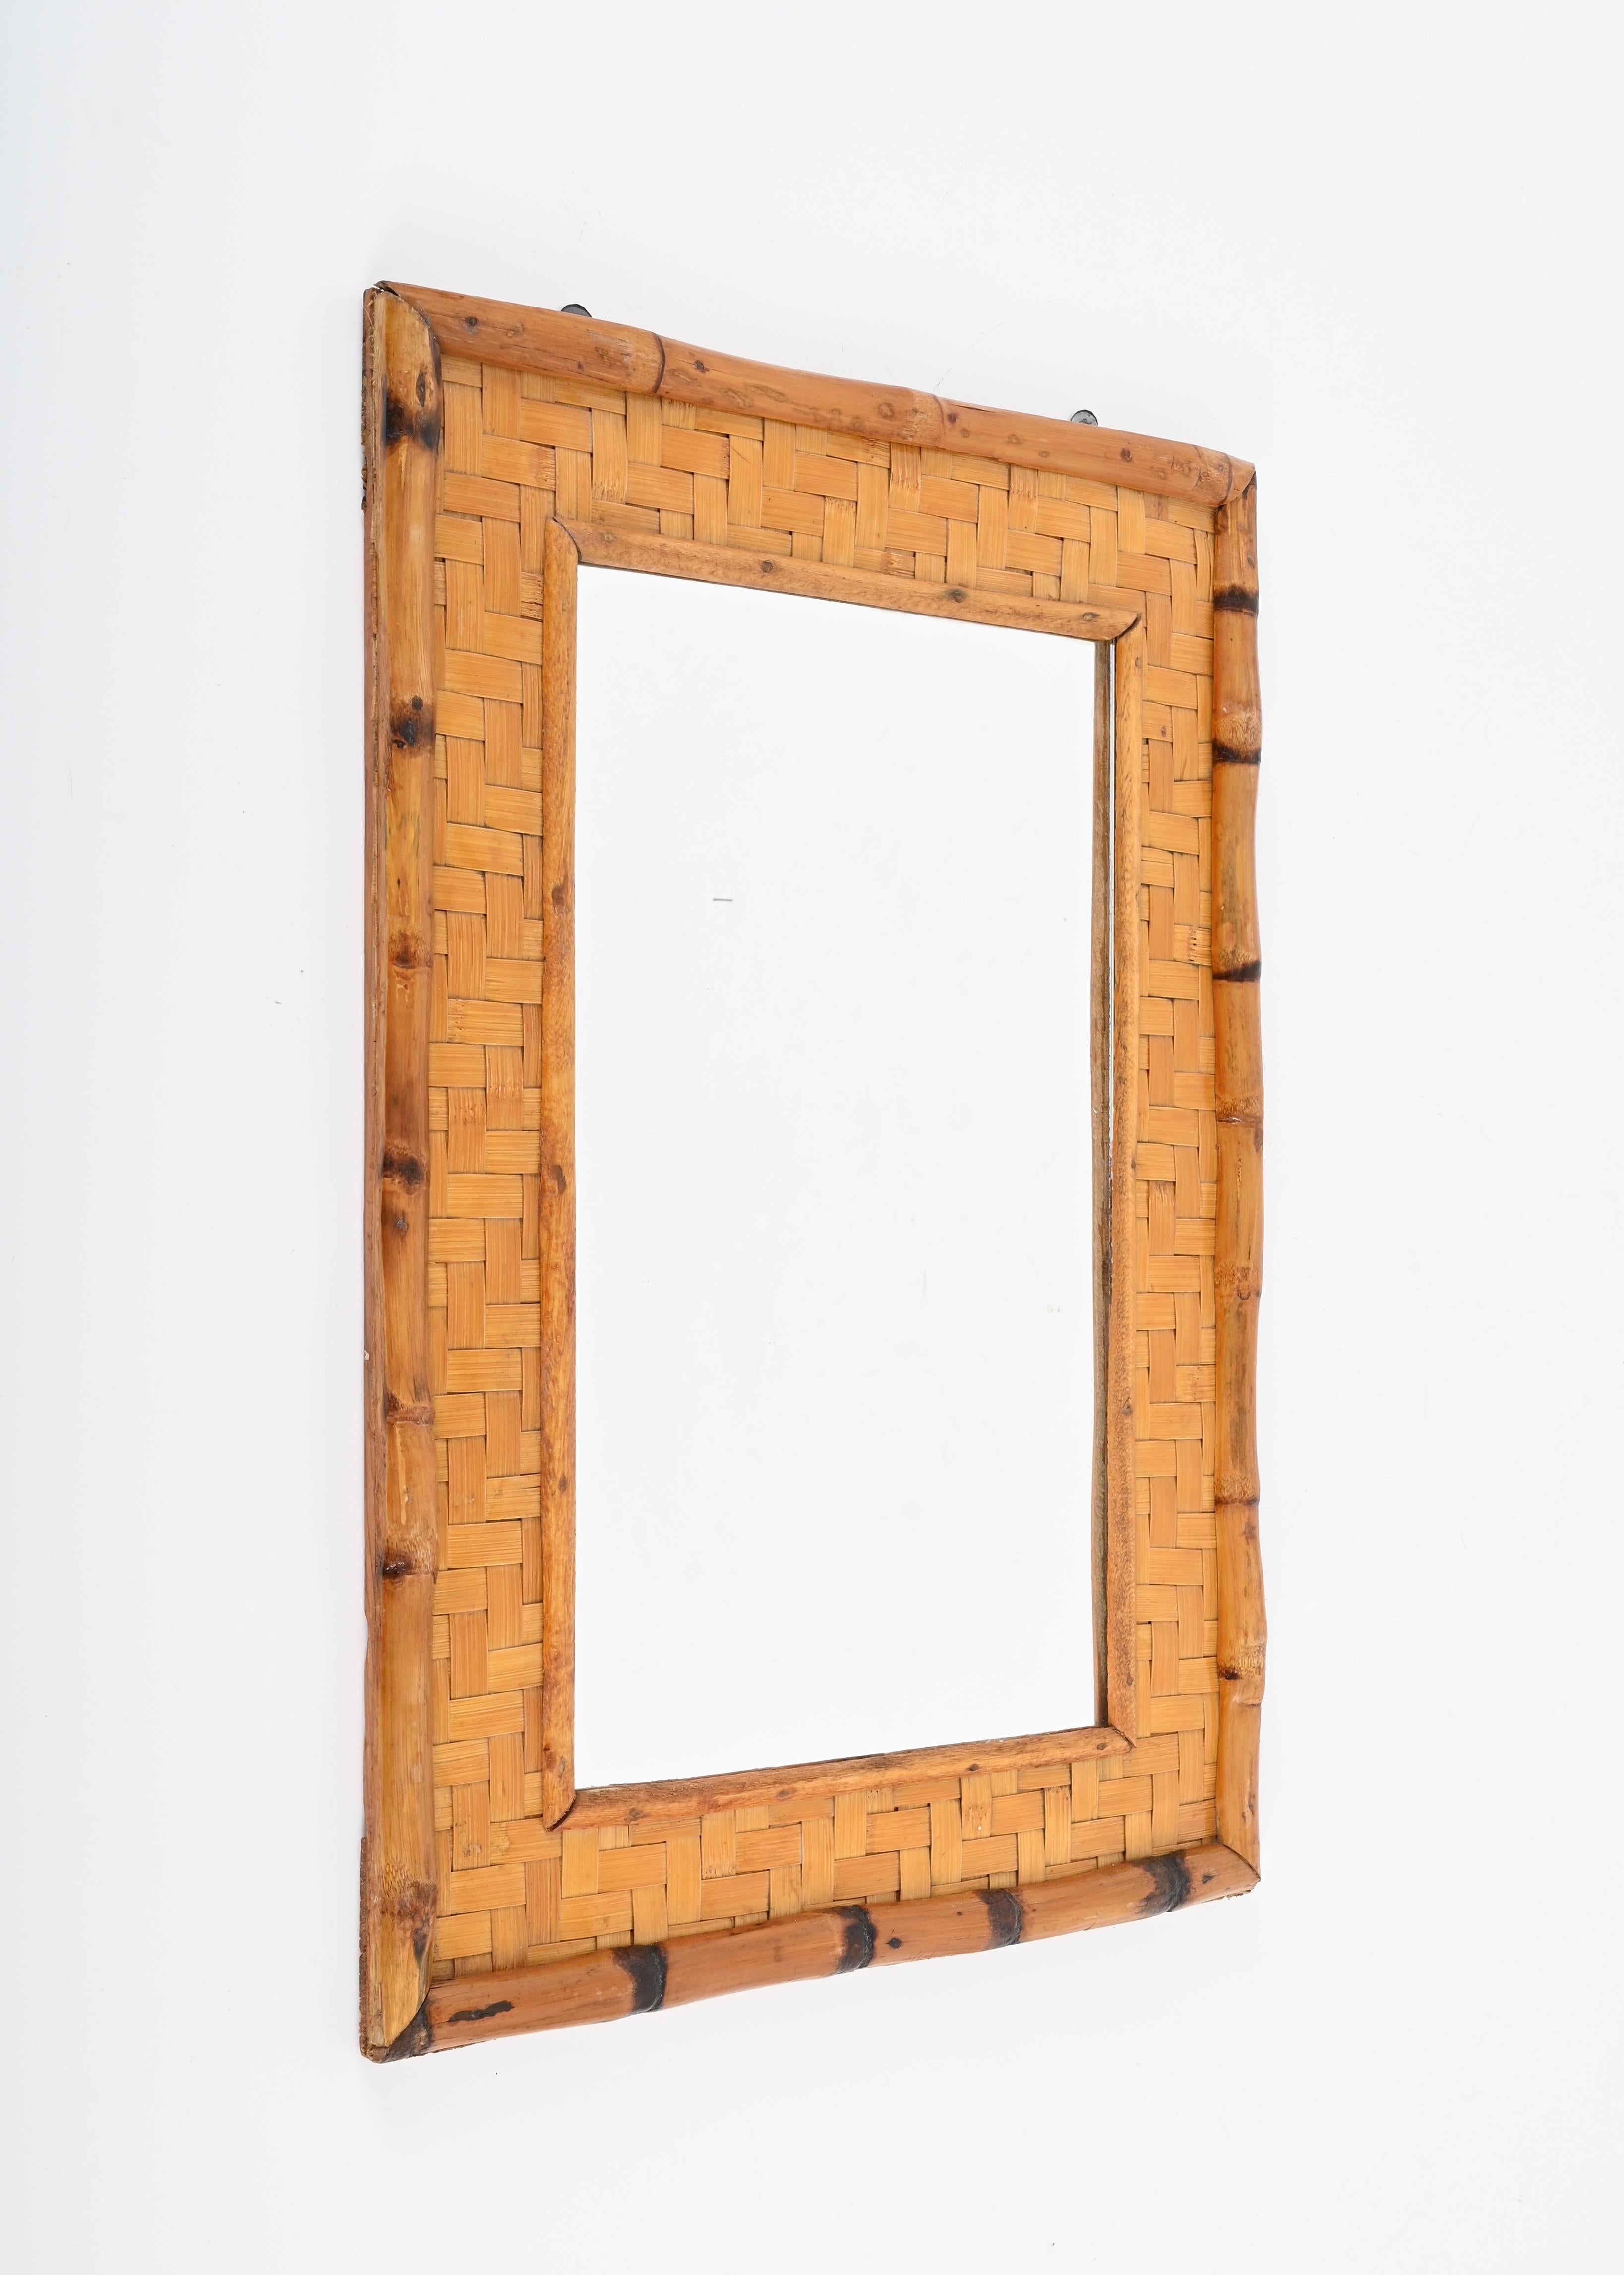 Erstaunlicher rechteckiger Mid-Century-Spiegel aus Bambusrohr und geflochtenem Rattan. Dieses fantastische Stück wurde in den 1960er Jahren in Italien entworfen.

Dieser Spiegel ist dank seines beeindruckenden Doppelrahmens einzigartig,  aus einem